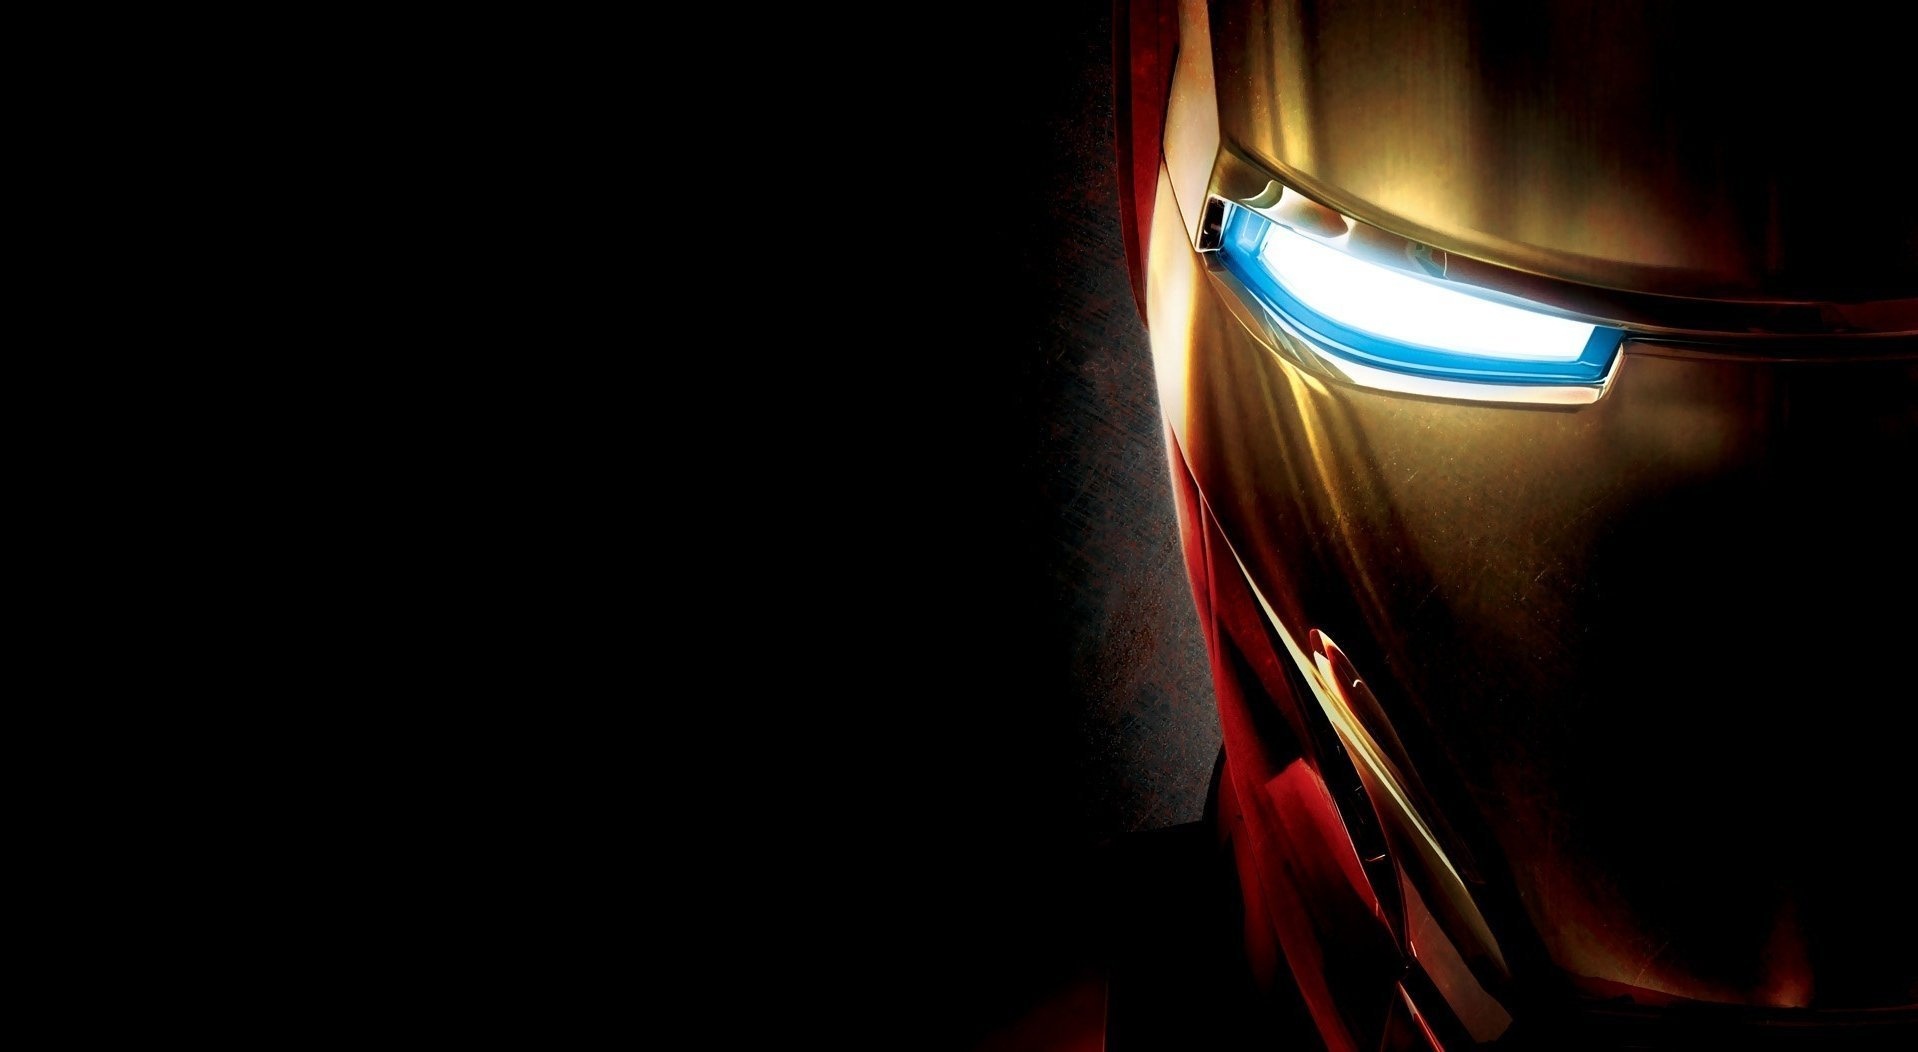 Iron Man Face Wallpapers